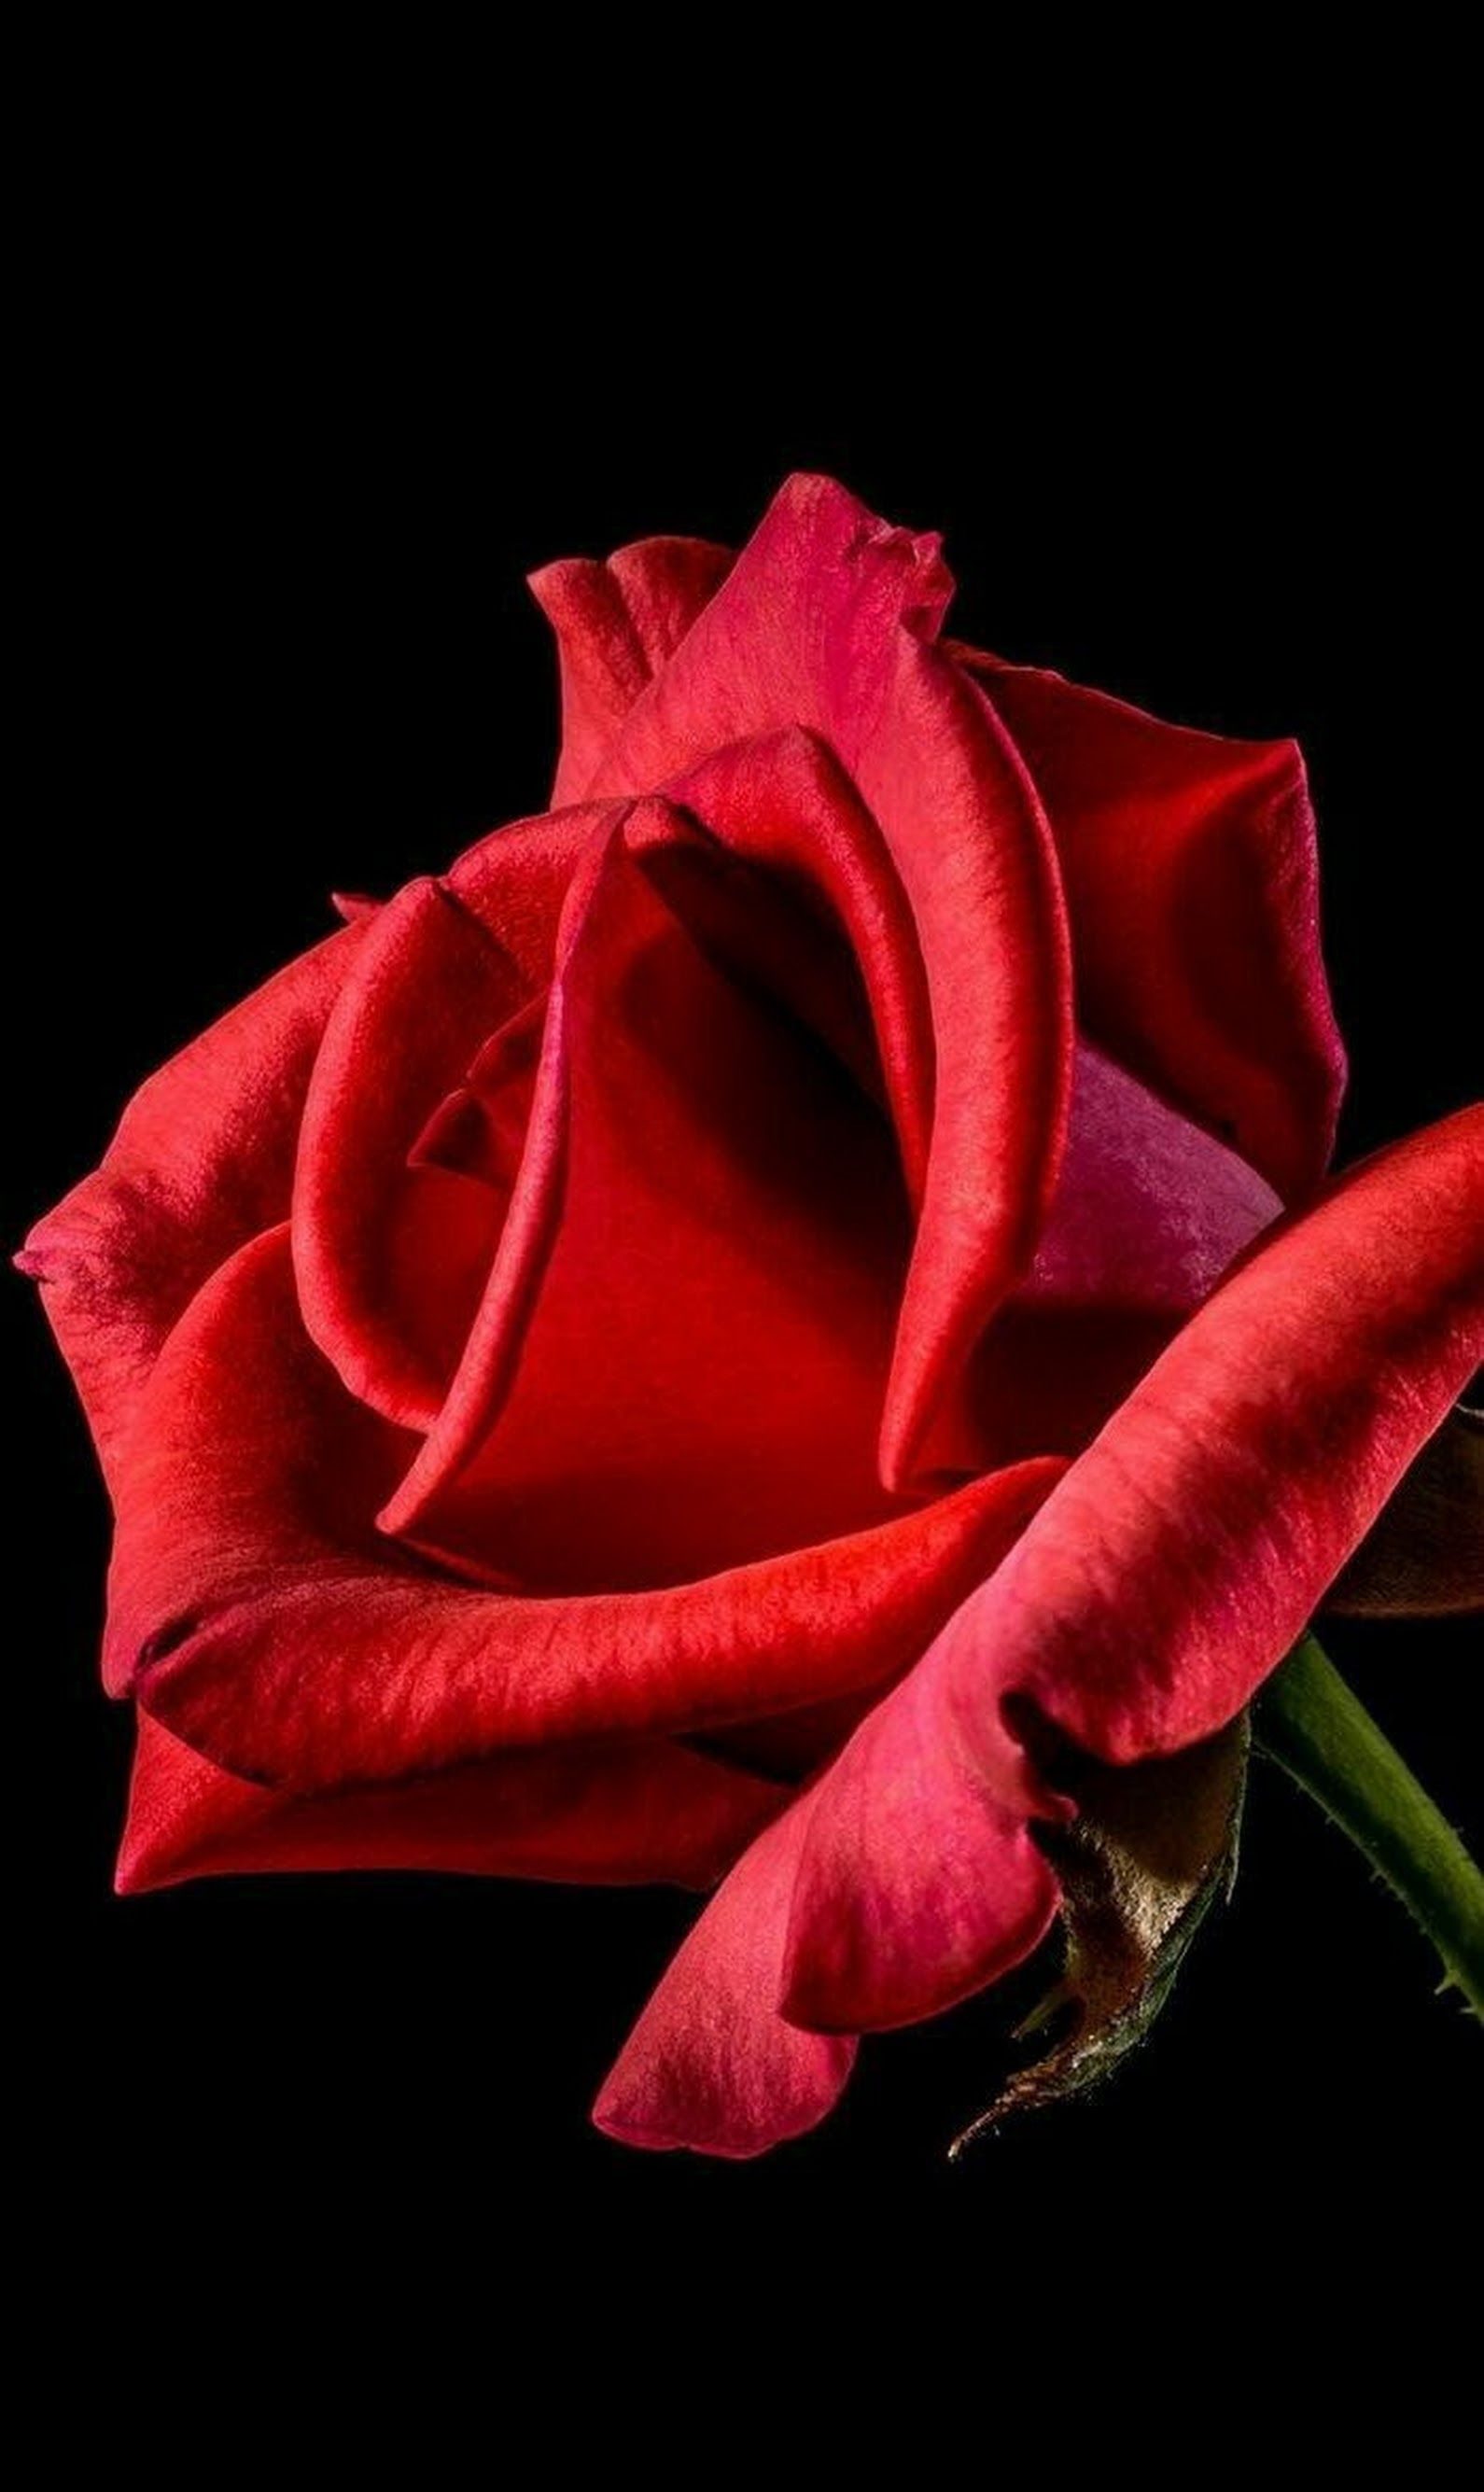 David. Red roses, Beautiful roses, Blooming rose